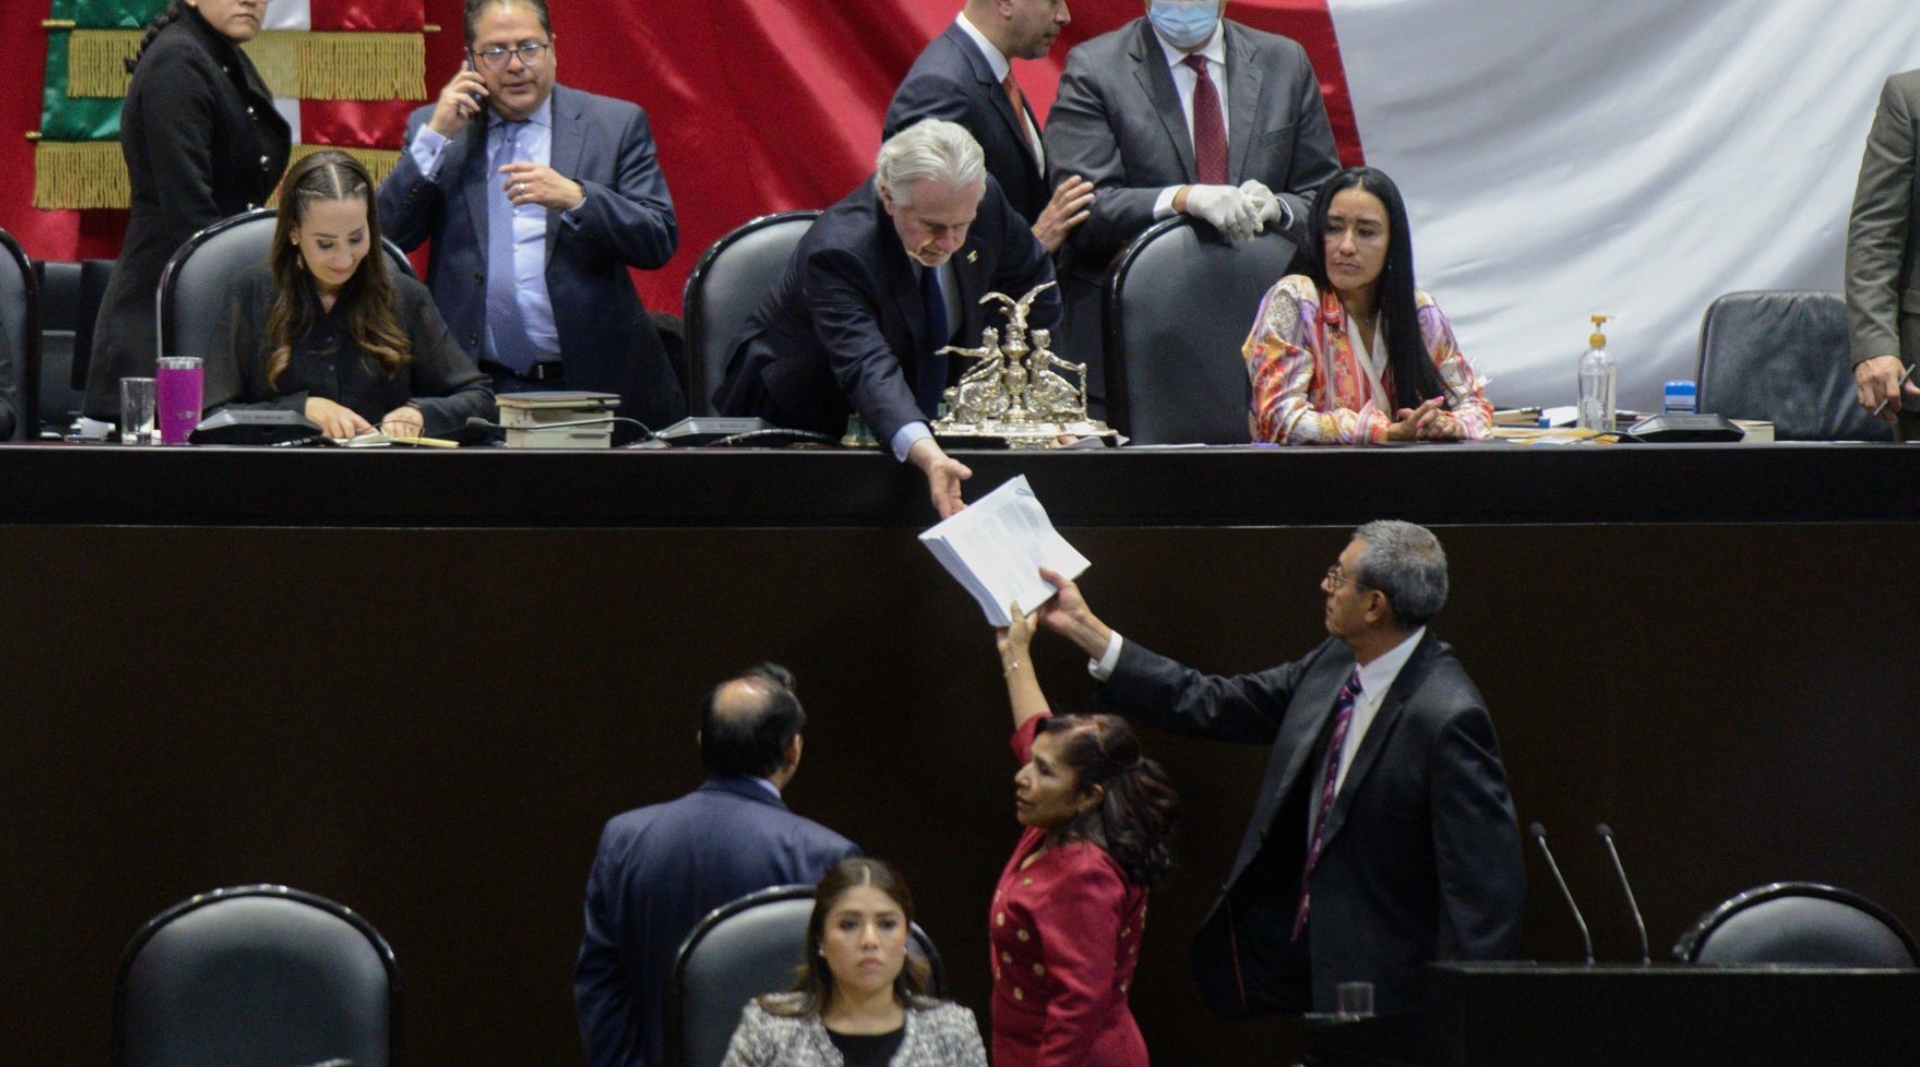 La diputada Graciela Sánchez Ortiz le entregó la propuesta de modificaciones a las leyes secundarias en materia electoral a Santiago Creel para su discusión y votación la cual fue aprobada (Cuartoscuro)